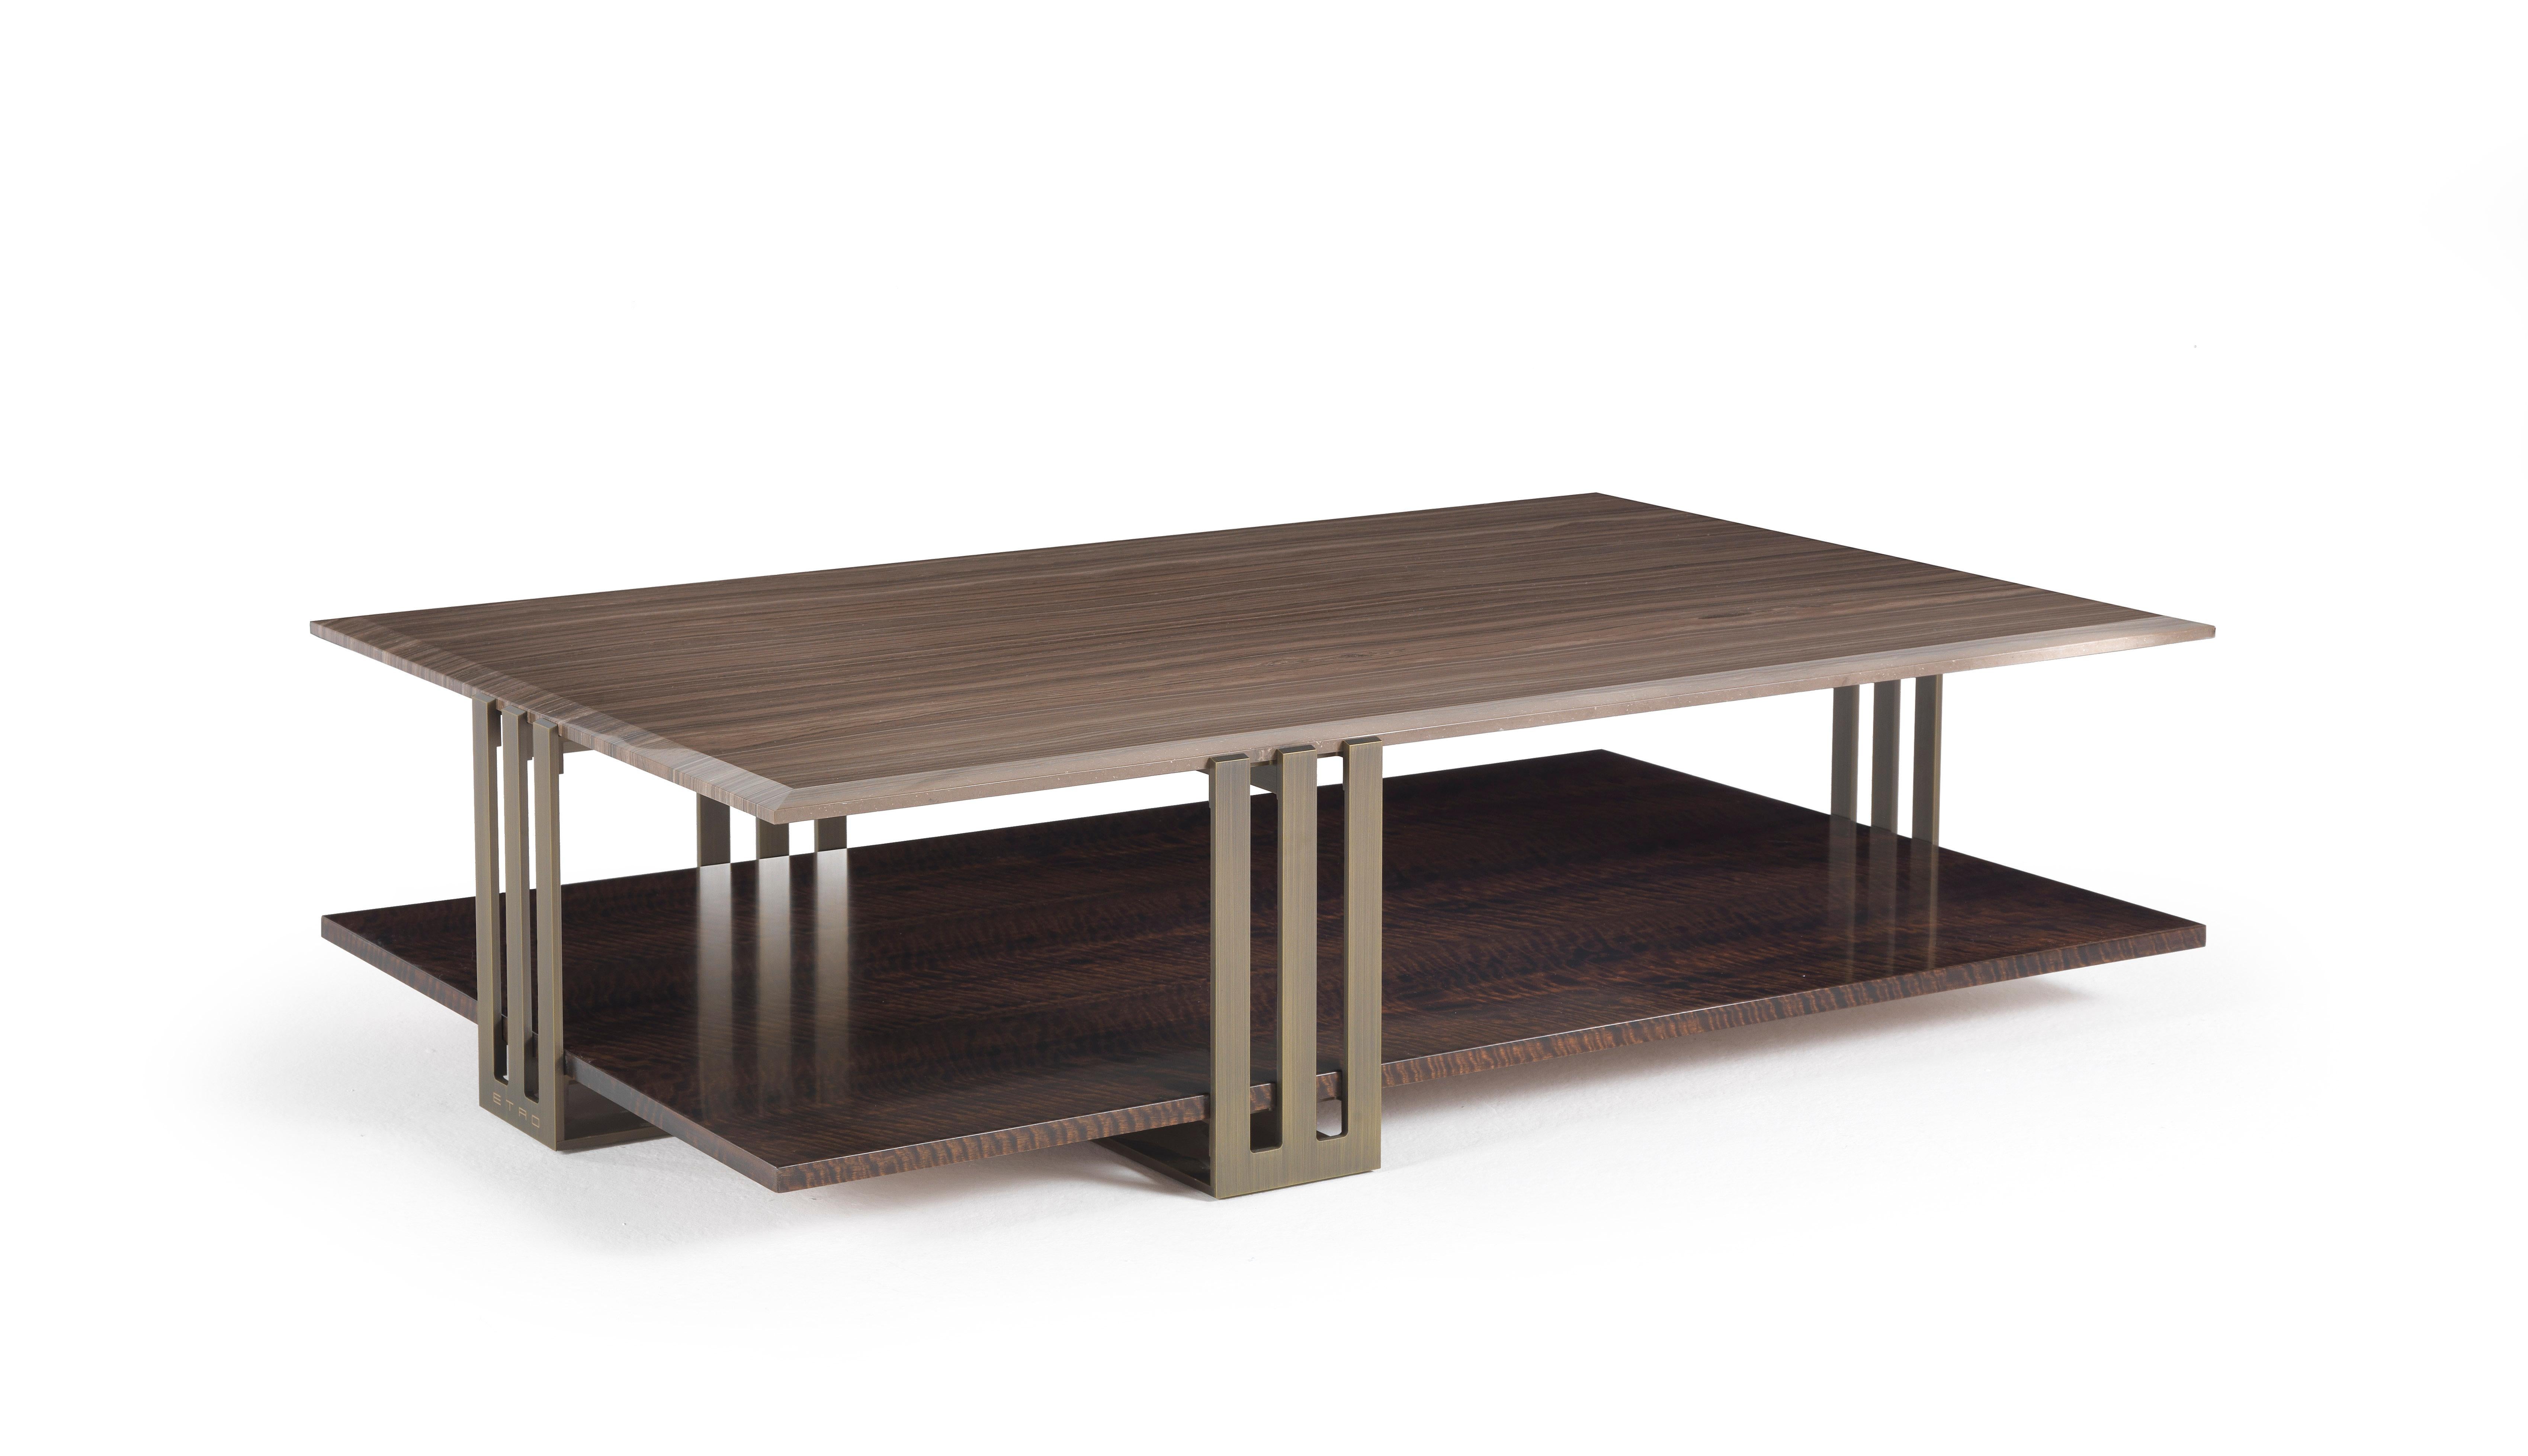 Ein kompakter Tisch mit zwei Platten, der sich durch eine originelle Kombination von Materialien auszeichnet. Die Struktur aus patinierter Bronze trifft auf die kostbare Eleganz der Platten aus Marmor oder Holz aus der Kollektion Etro Home